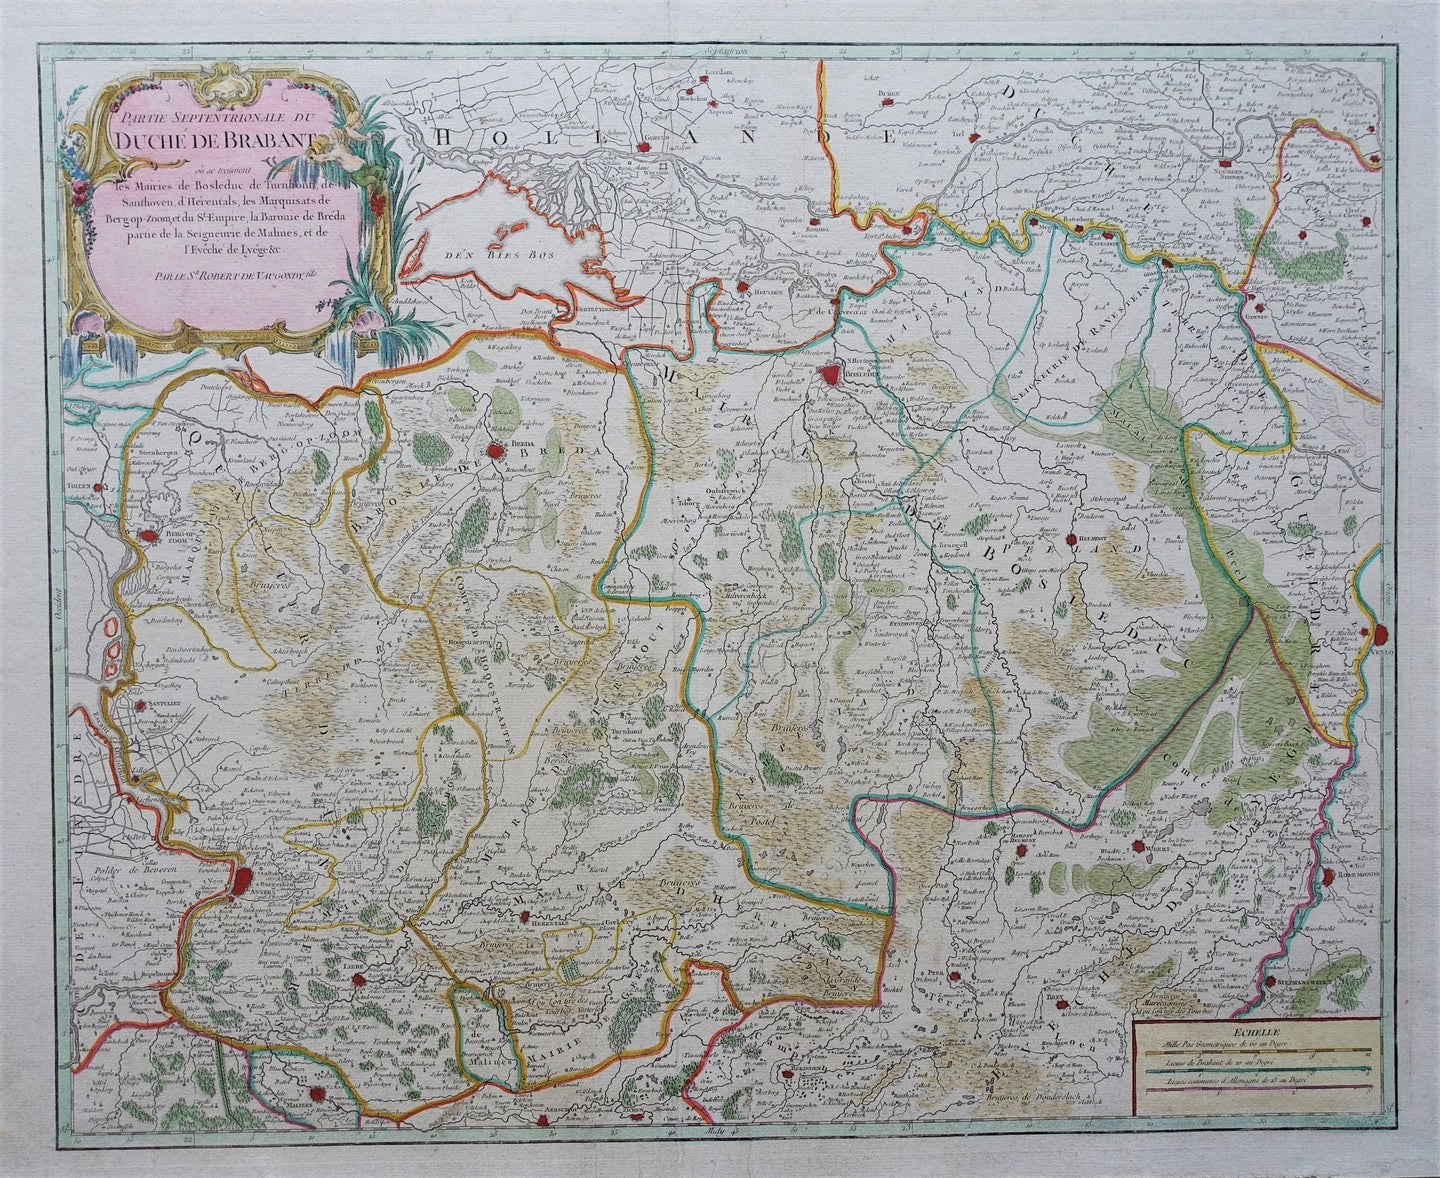 Brabant Noord-Brabant (Staats-Brabant) - Gilles Robert de Vaugondy - 1752